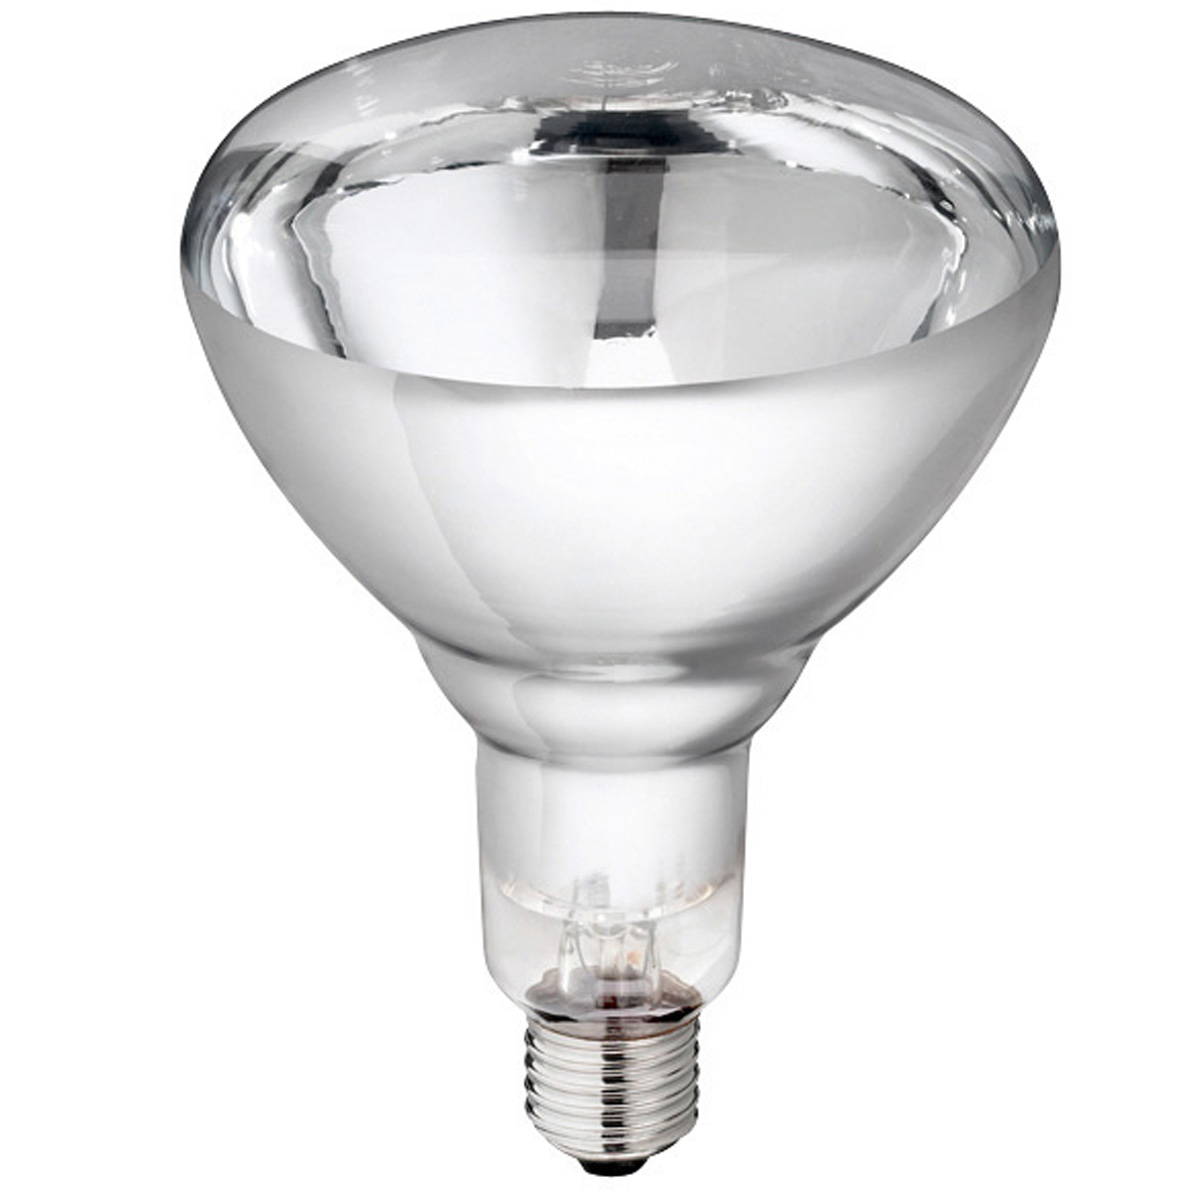 Philips lampa i härdat glas klart 150 W